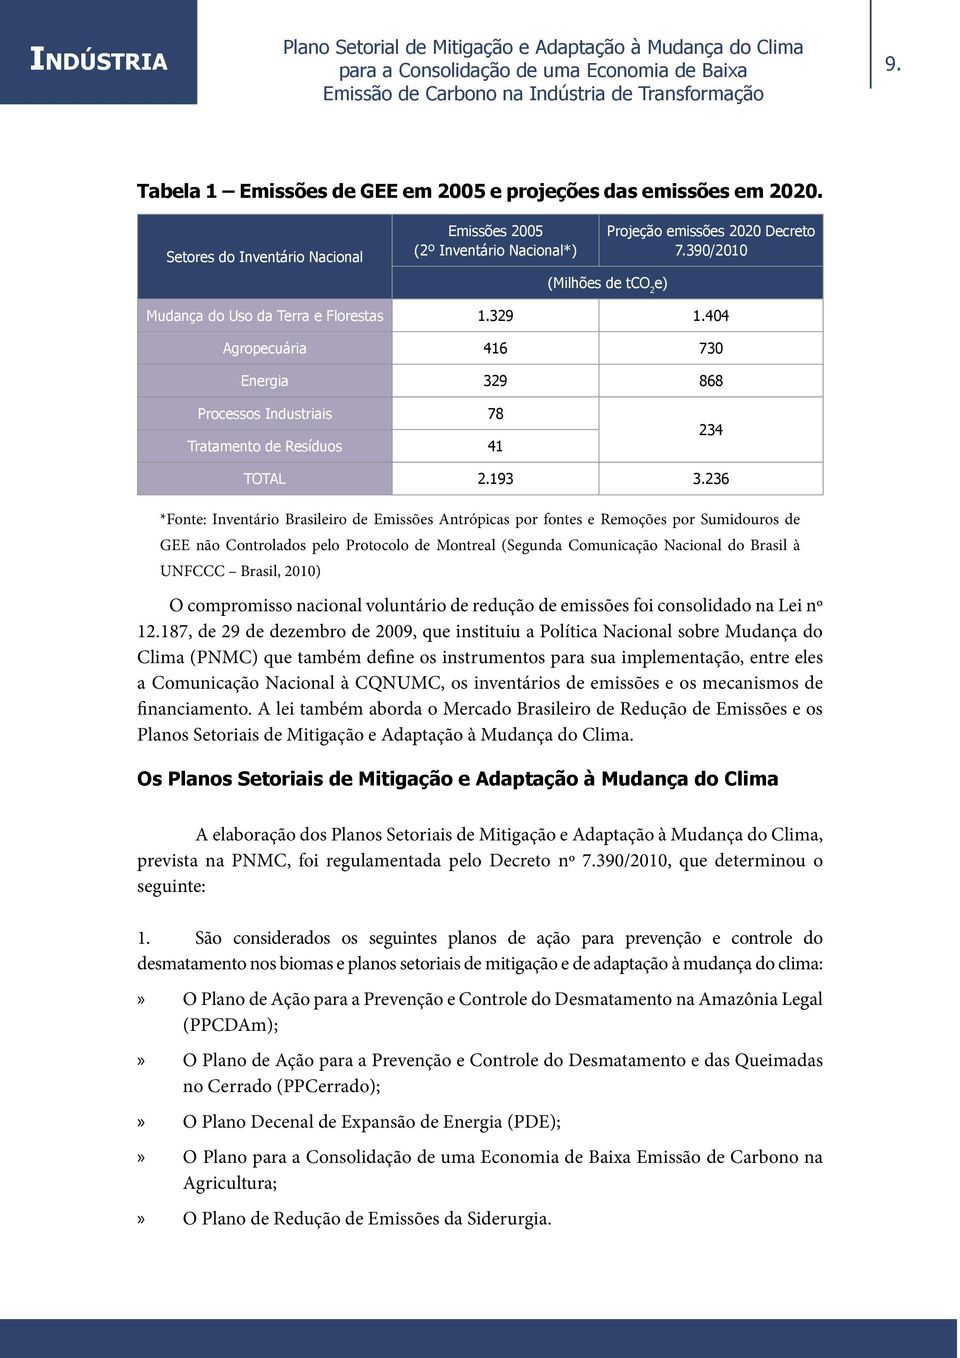 236 *Fonte: Inventário Brasileiro de Emissões Antrópicas por fontes e Remoções por Sumidouros de GEE não Controlados pelo Protocolo de Montreal (Segunda Comunicação Nacional do Brasil à UNFCCC